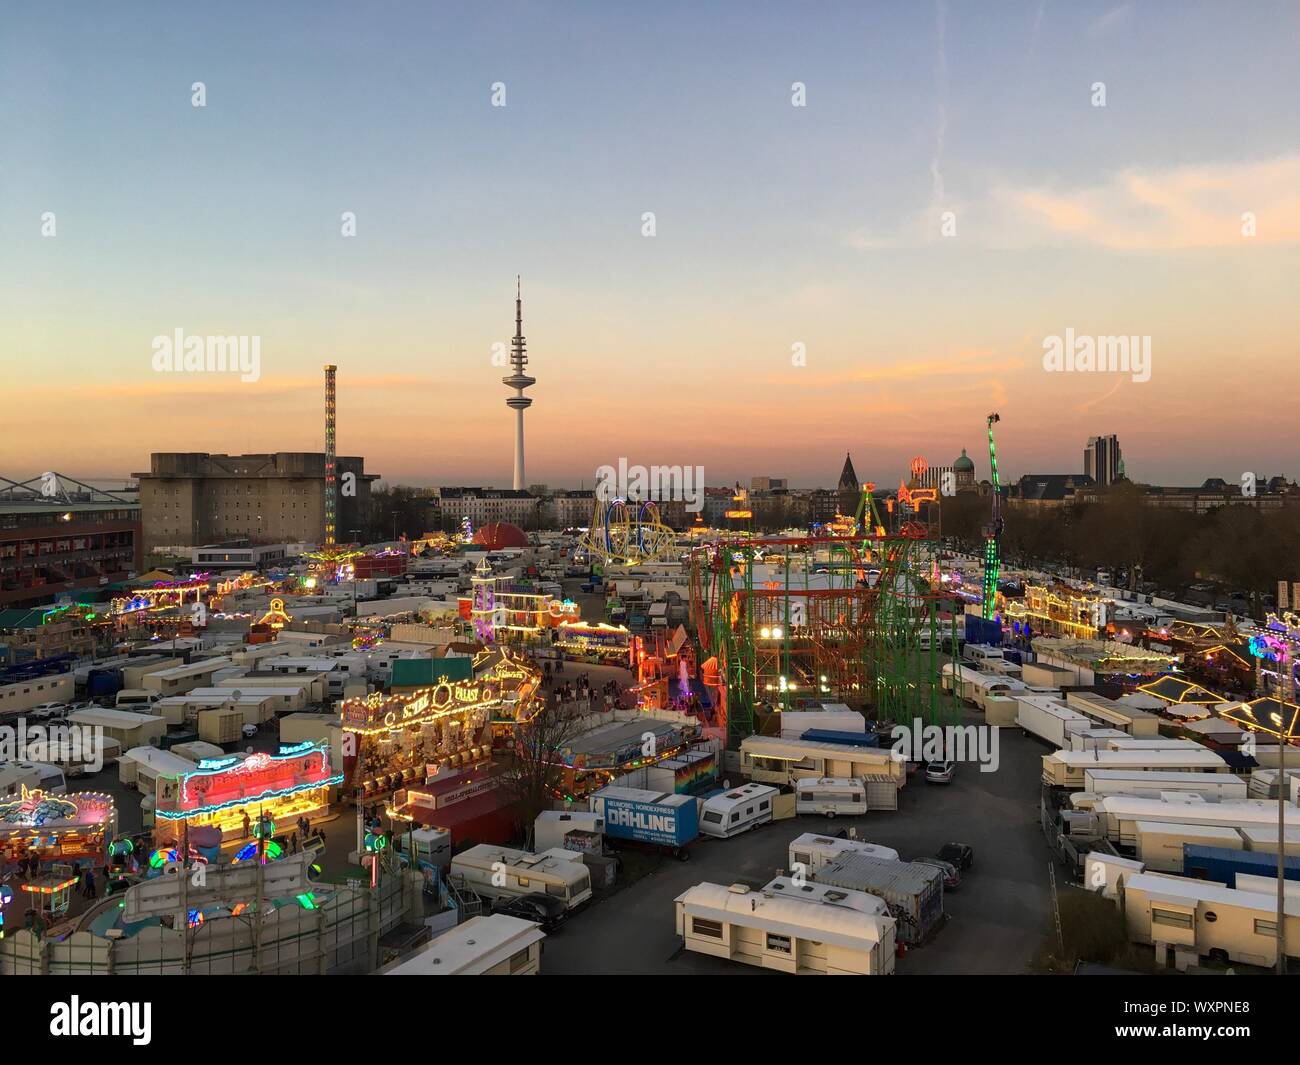 Hambourg - Mars 27, 2017 : Large Vue aérienne du grand Fun Fair 'Hamburger Dom' Avec montagnes russes, manèges de carnaval et Hambourg Skyline at Dusk Banque D'Images